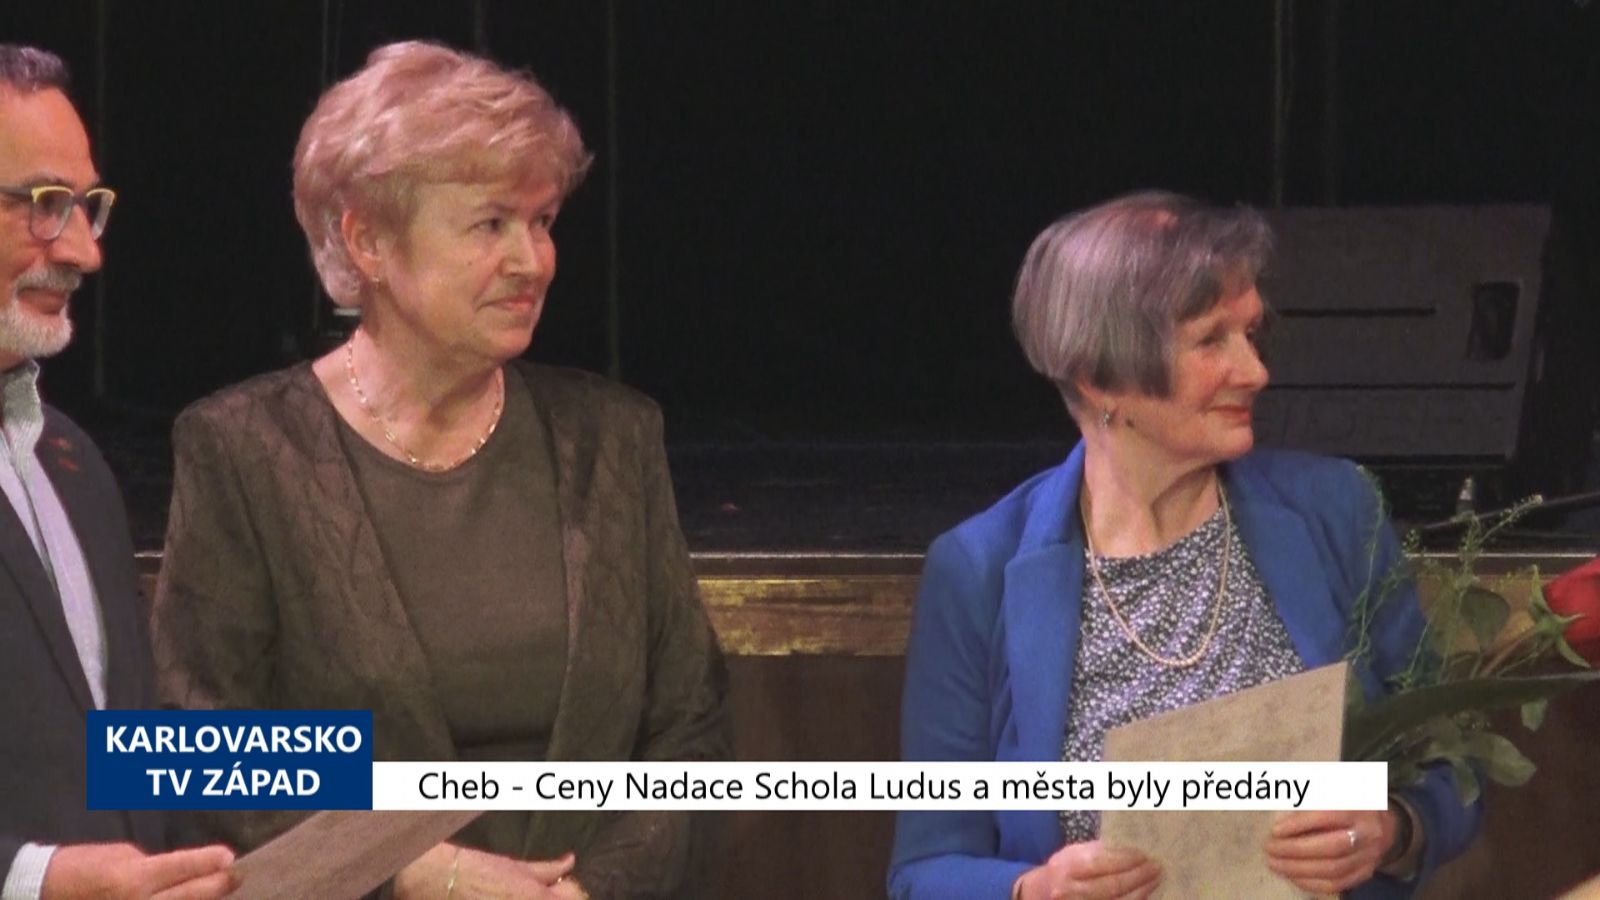 Cheb: Ceny Nadace Schola Ludus a města byly předány (TV Západ)